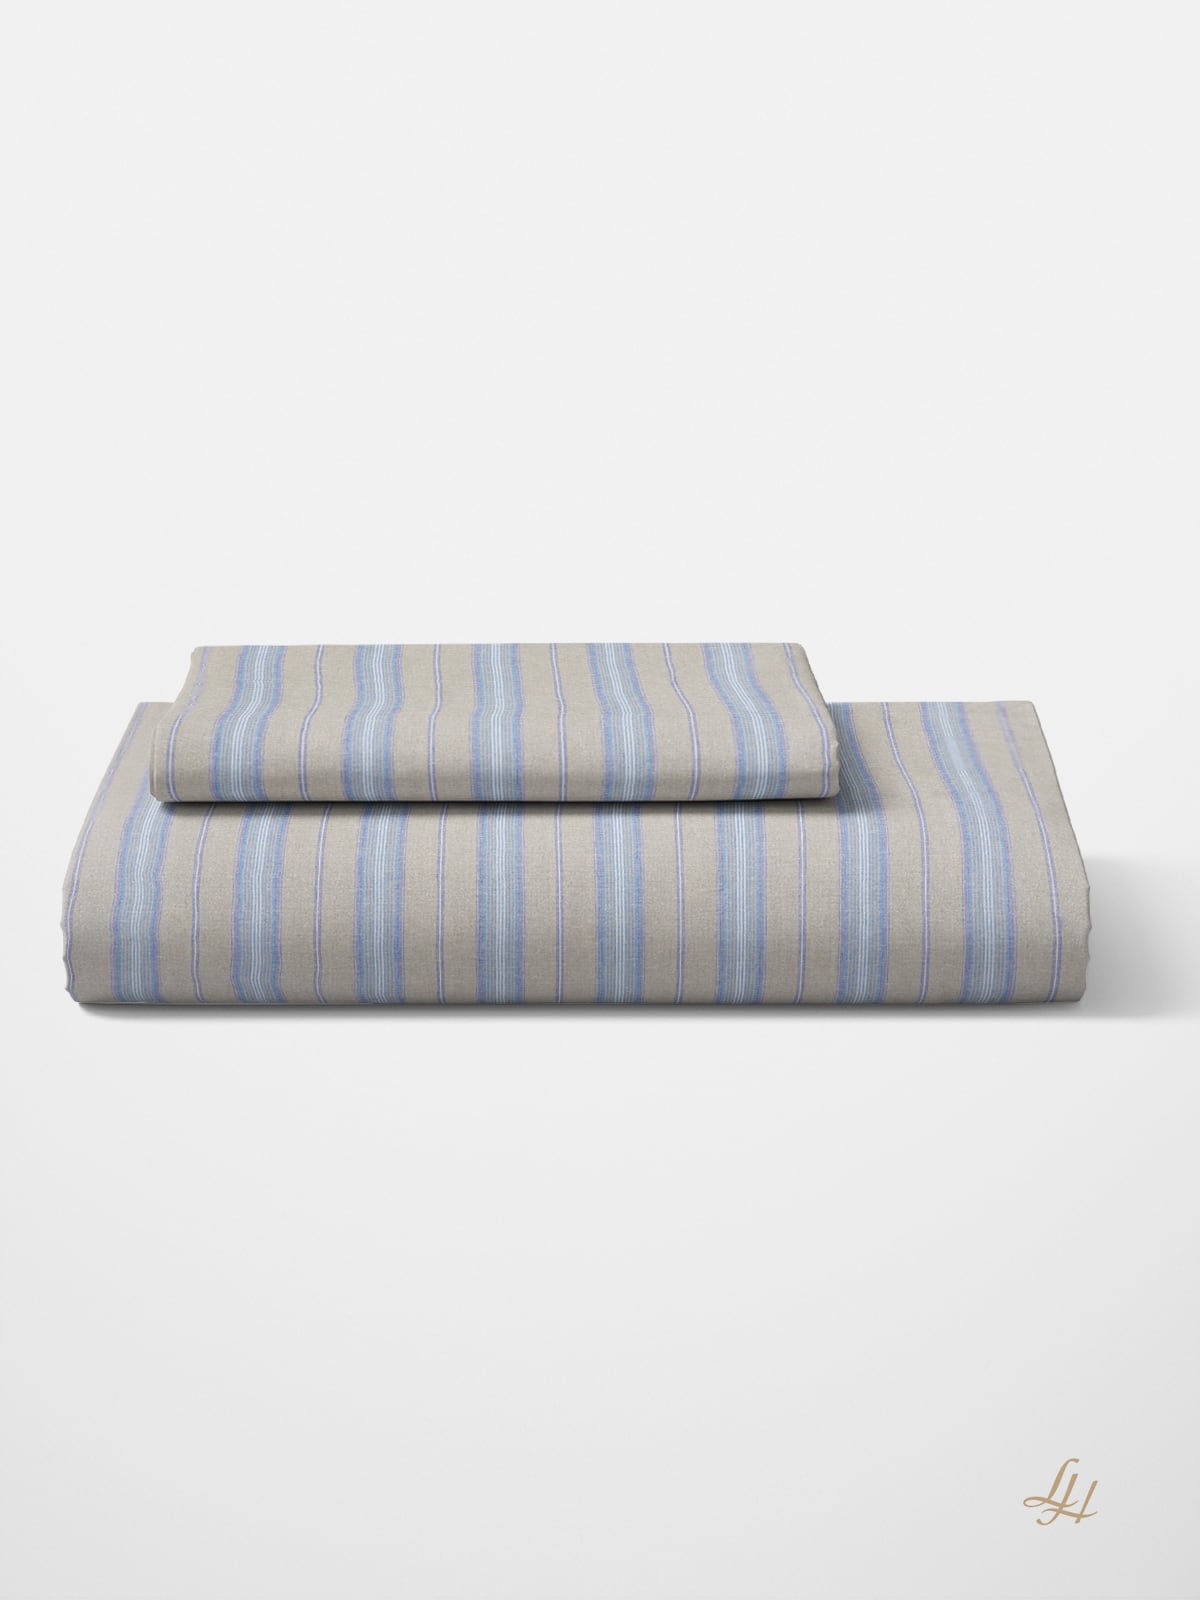 Bettbezug aus Reinleinen-mittelgrob mit farbigen Streifen in Blau gefaltet